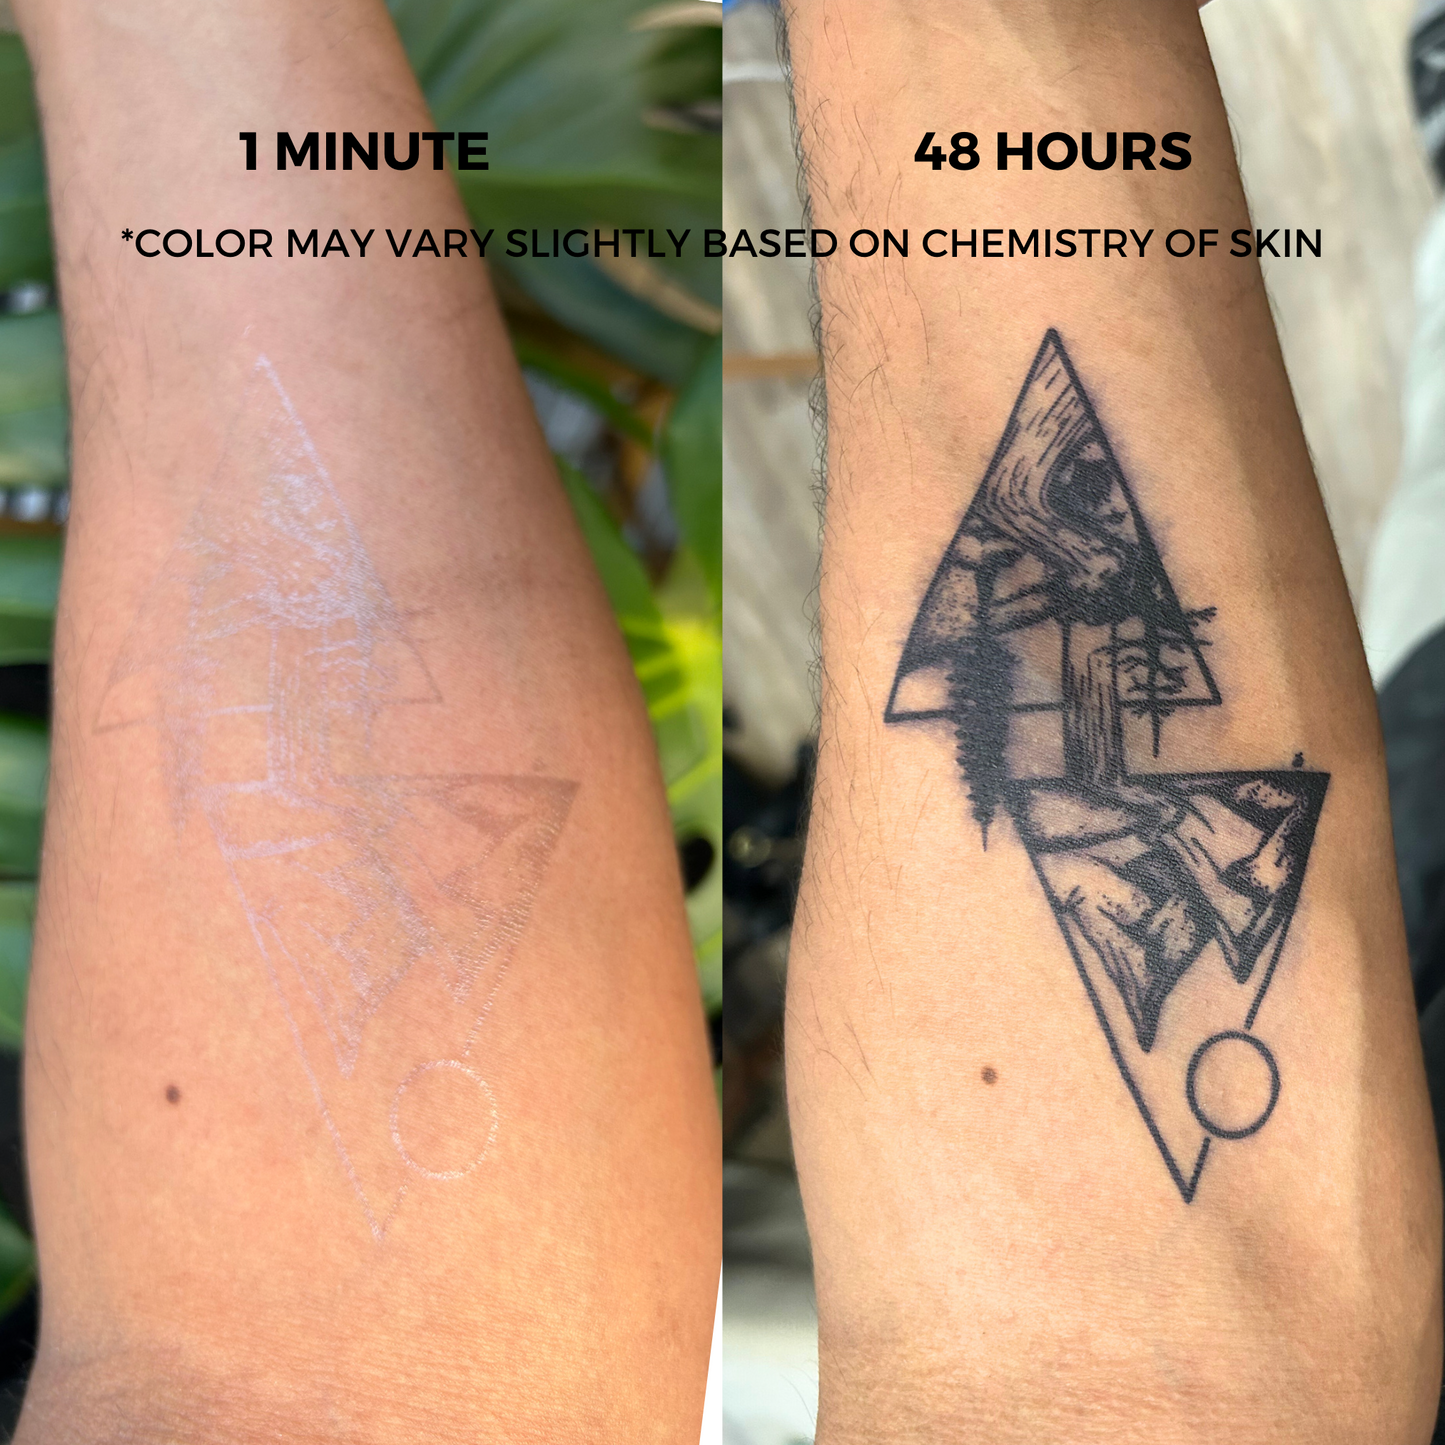 Celestial Sun Tattoo | 2 Week Temporary Tattoo | Plant Based Vegan Tattoo | Sun Tattoo | Cute Tattoo | Festival Tattoo | Matching Tattoo | Gift Idea | Temporary Tattoo | Spiritual Tattoo | Smiling Sun Tattoo